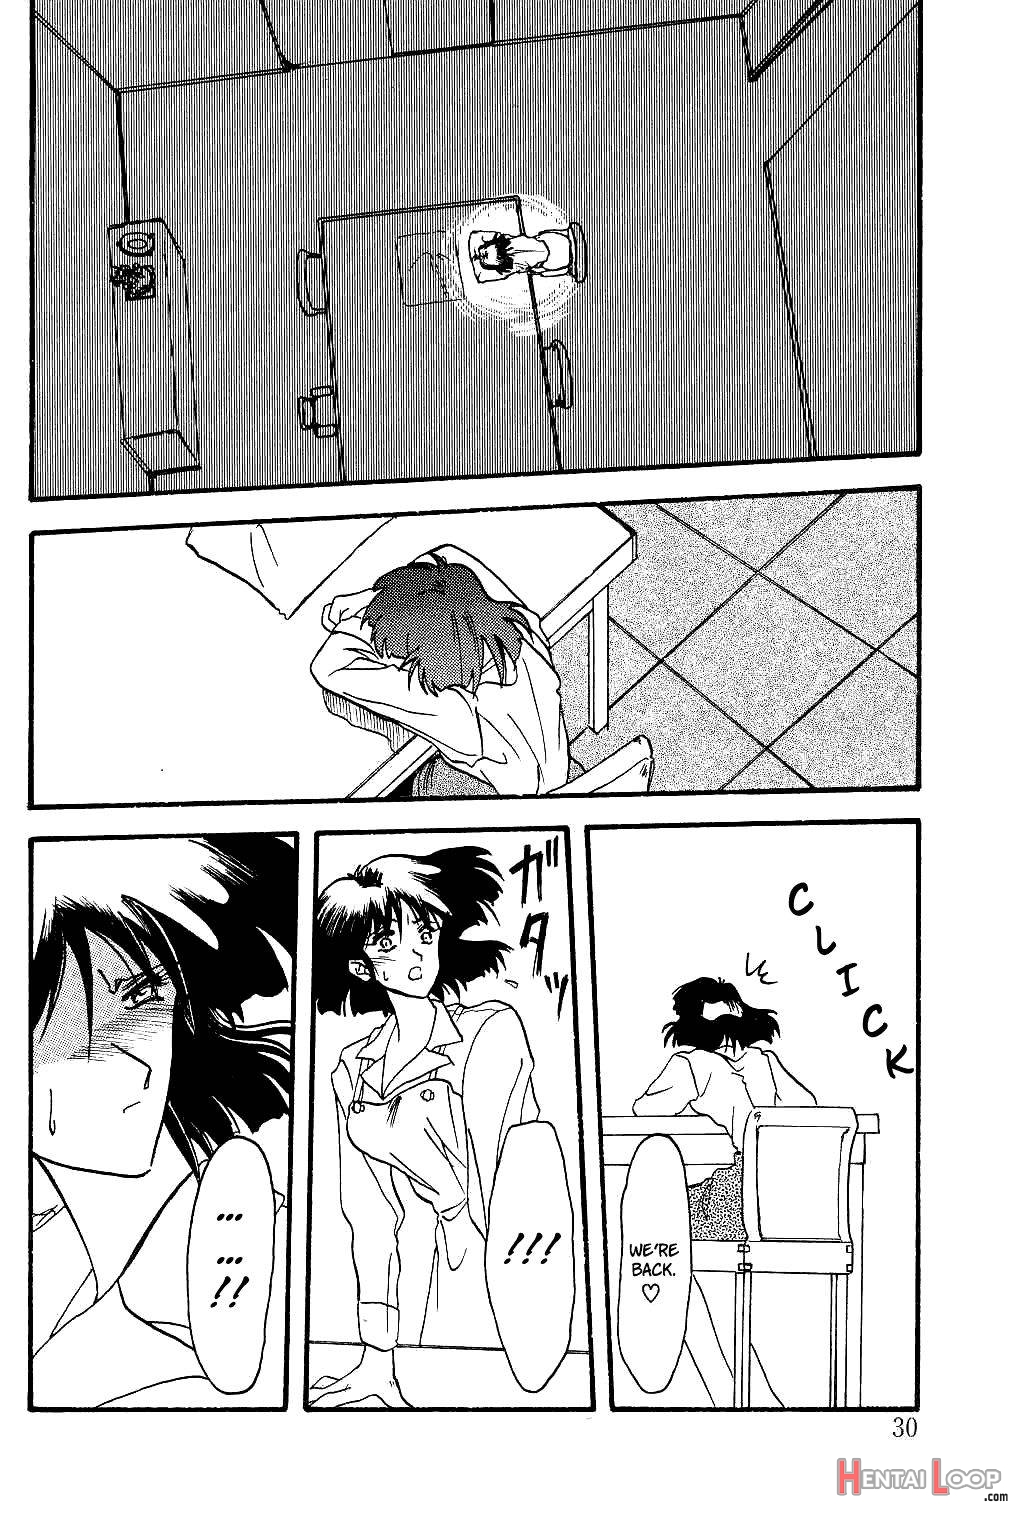 Hiiro no Koku page 29